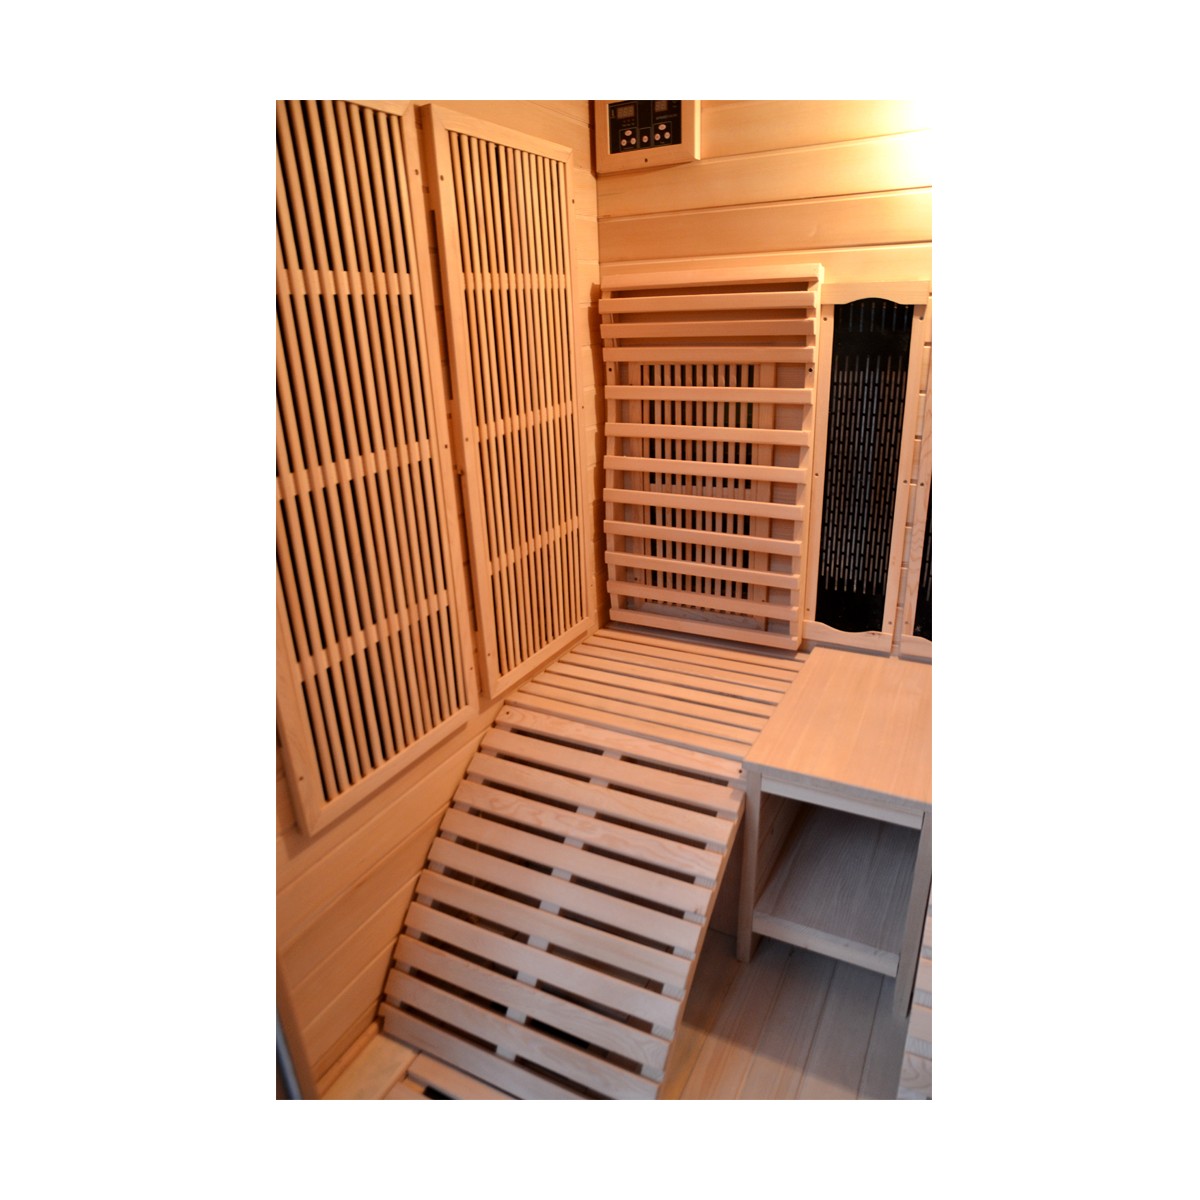 Sauna Infrarossi in Legno DOUBLE per 2 persone 150x150